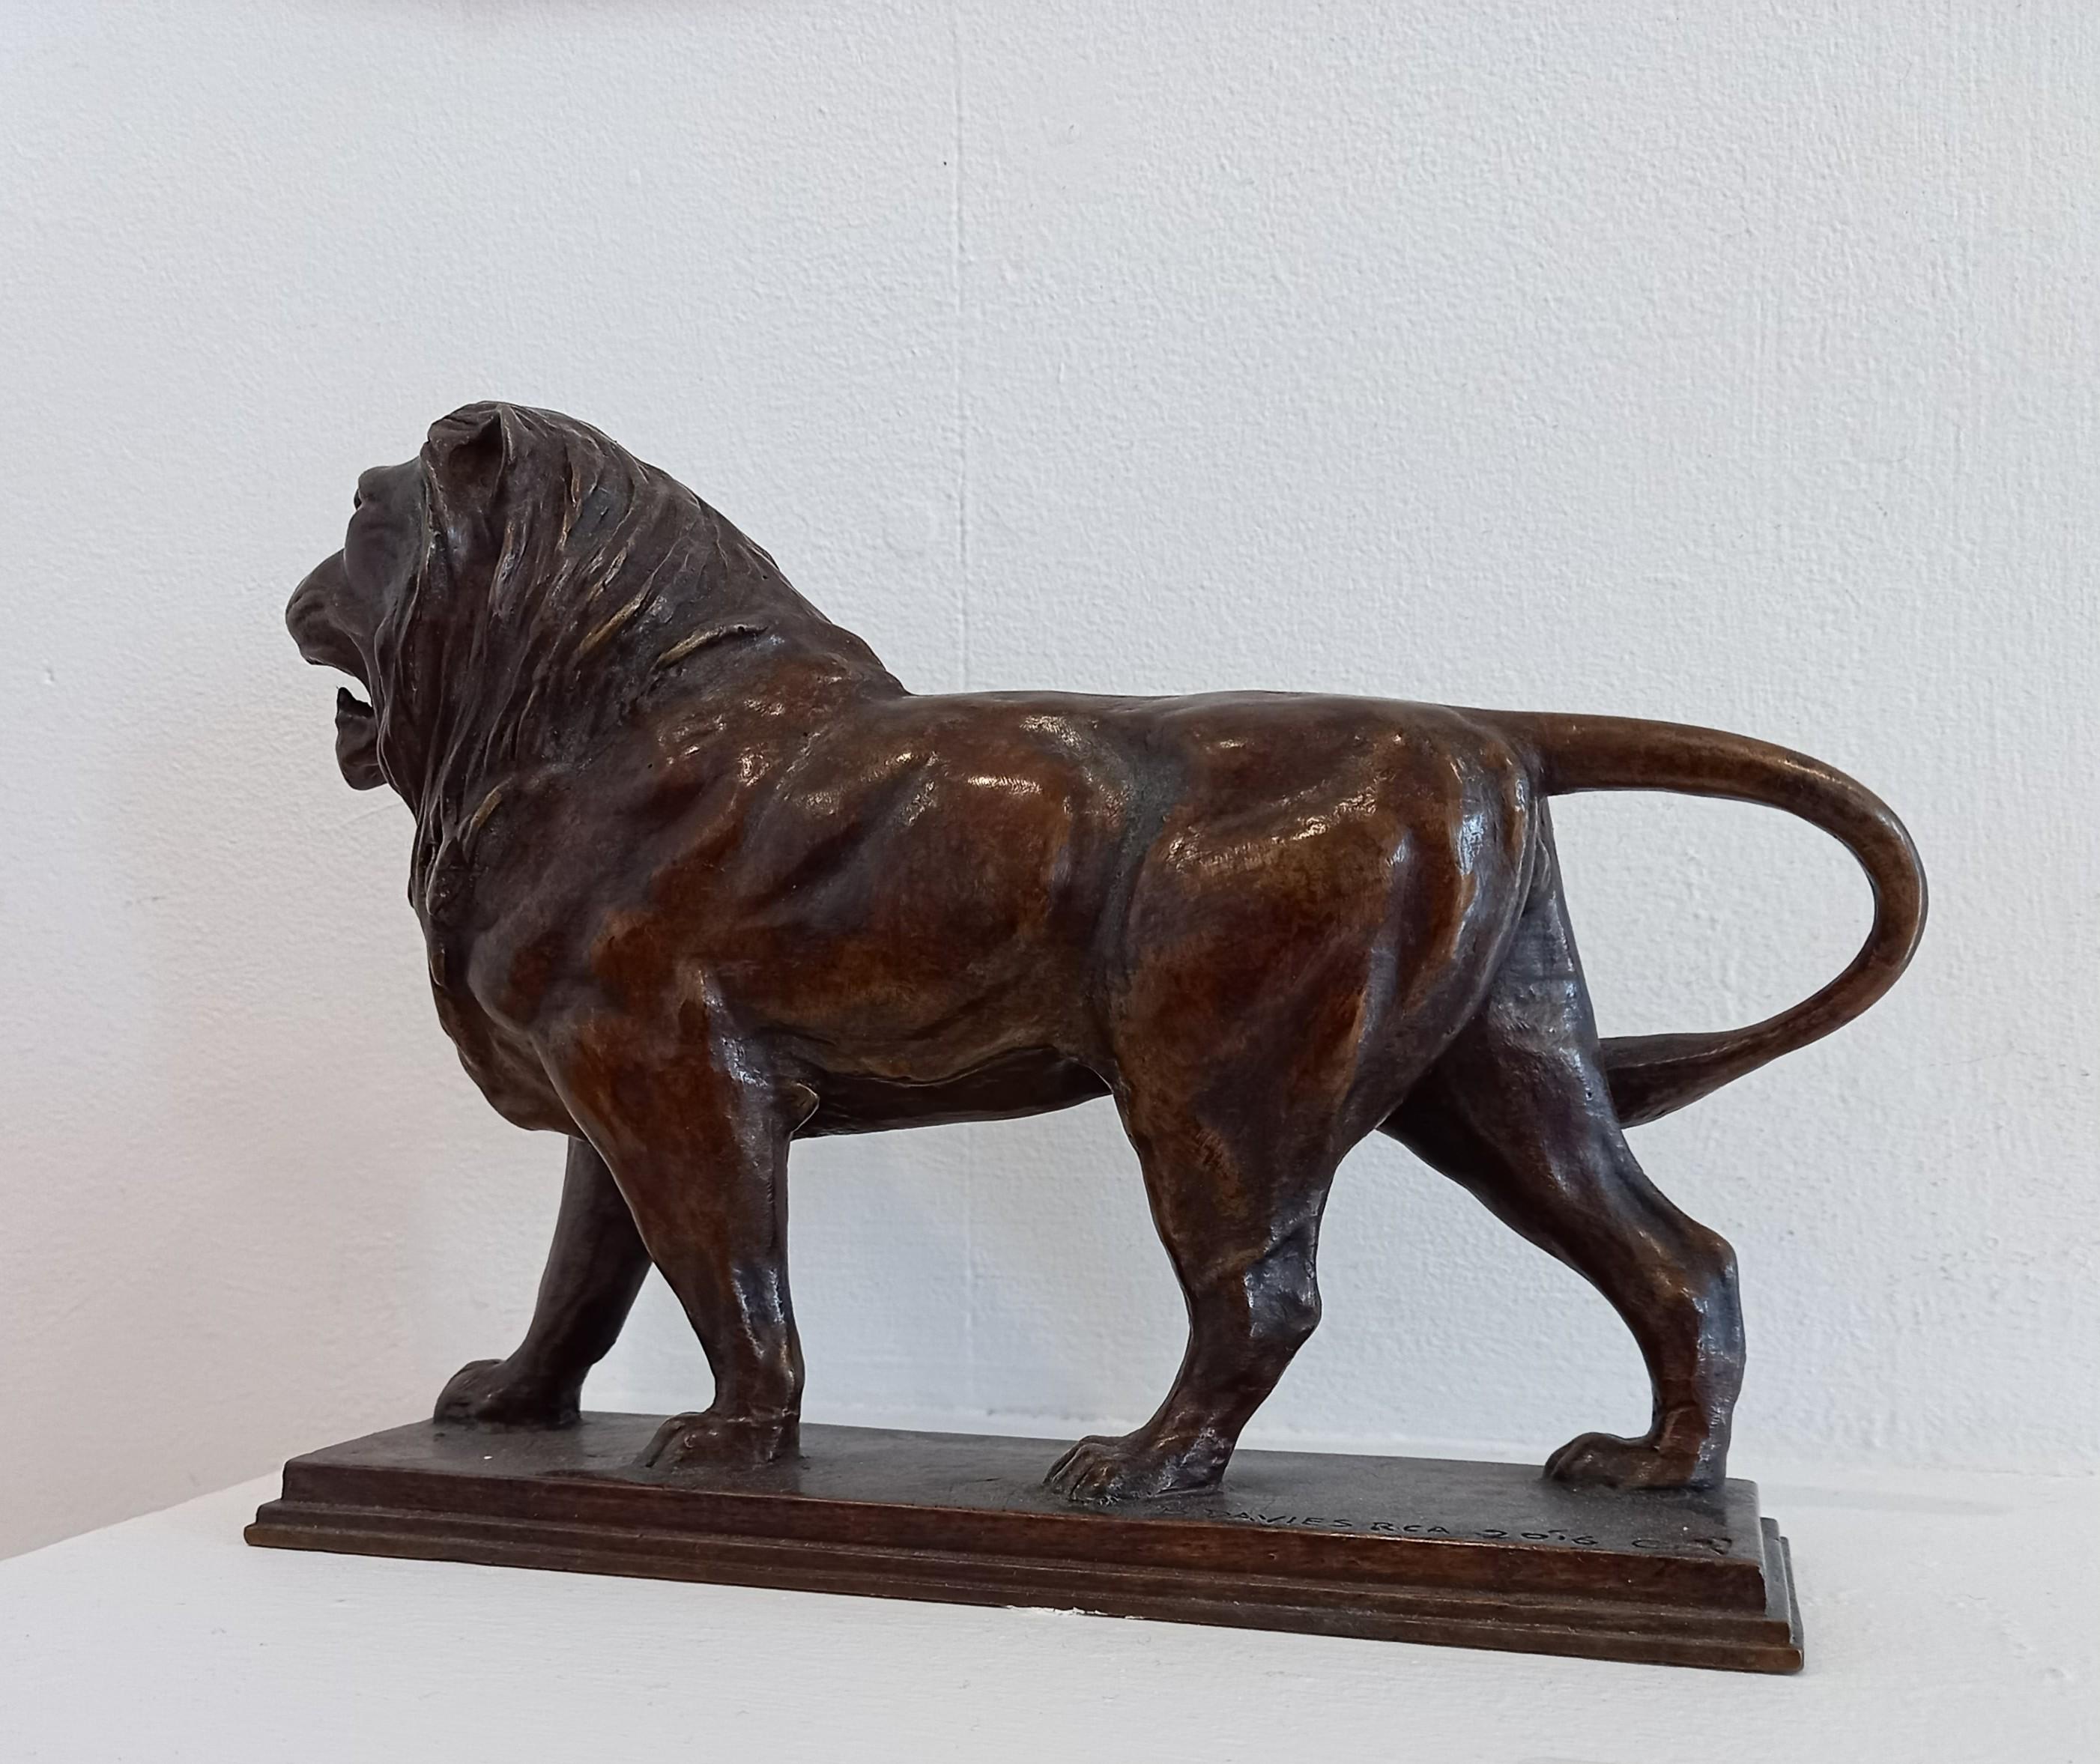 Löwe – Sculpture von Barry Davies 